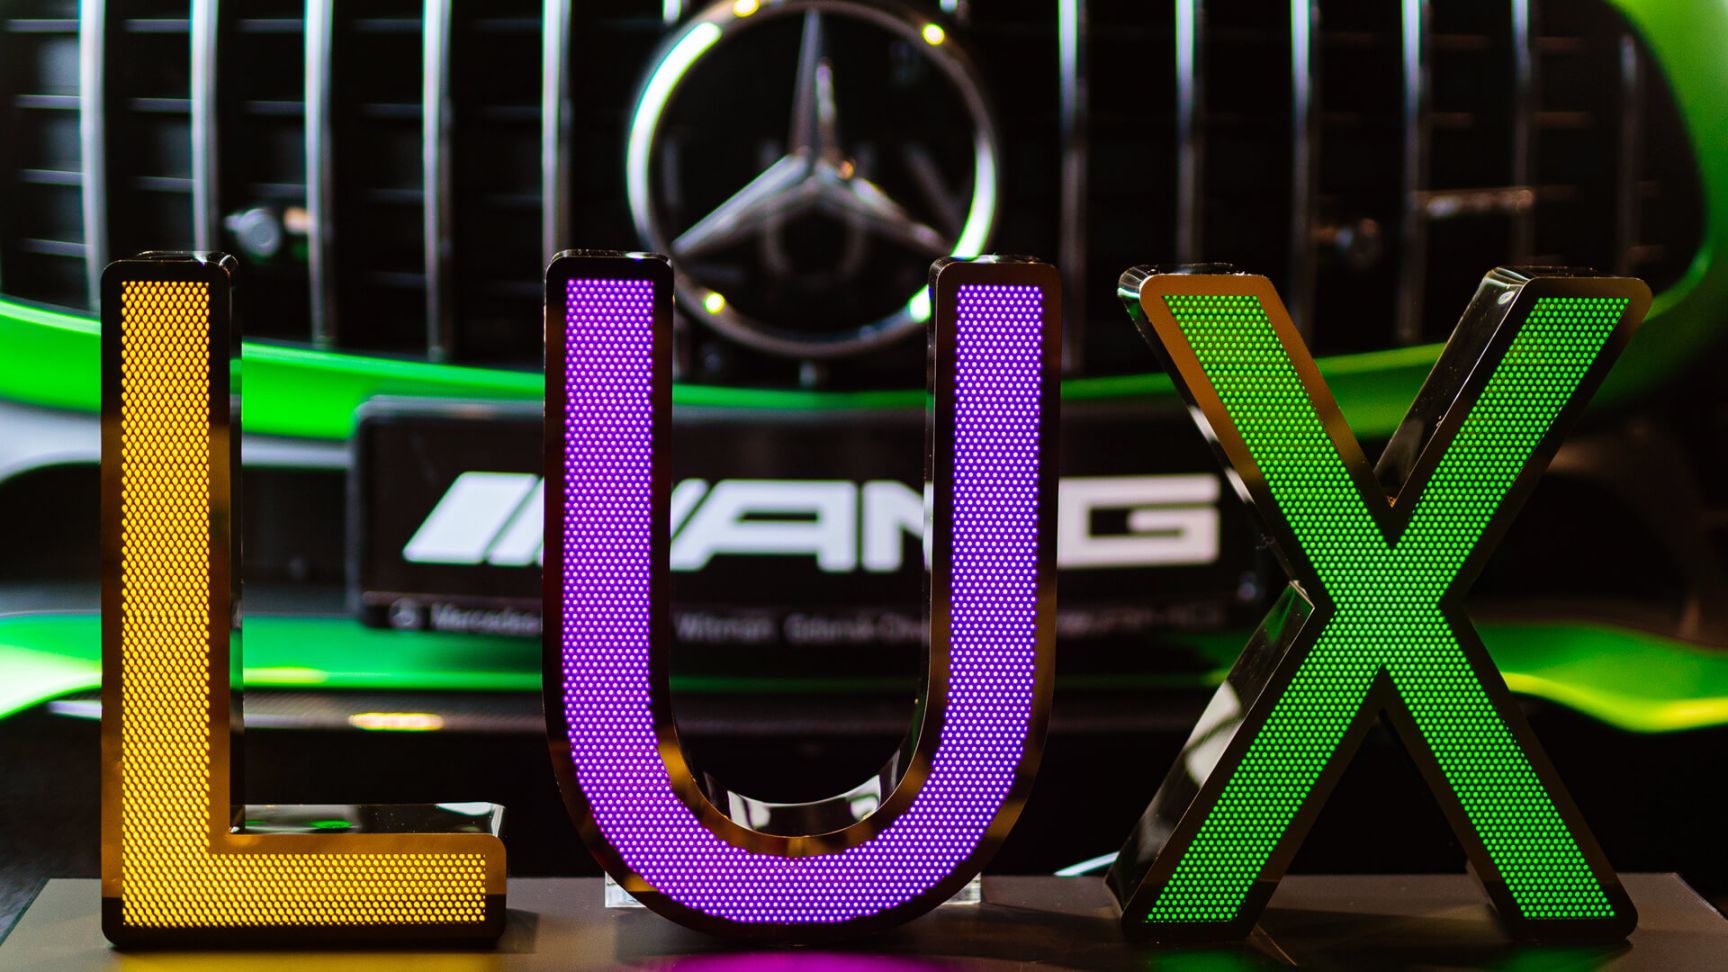 LUX-Buchstaben aus perforiertem Edelstahl - LUX-Schriftzug aus perforiertem Edelstahl, dreifarbig mit LED beleuchtet, auf Mercedes-Hintergrund